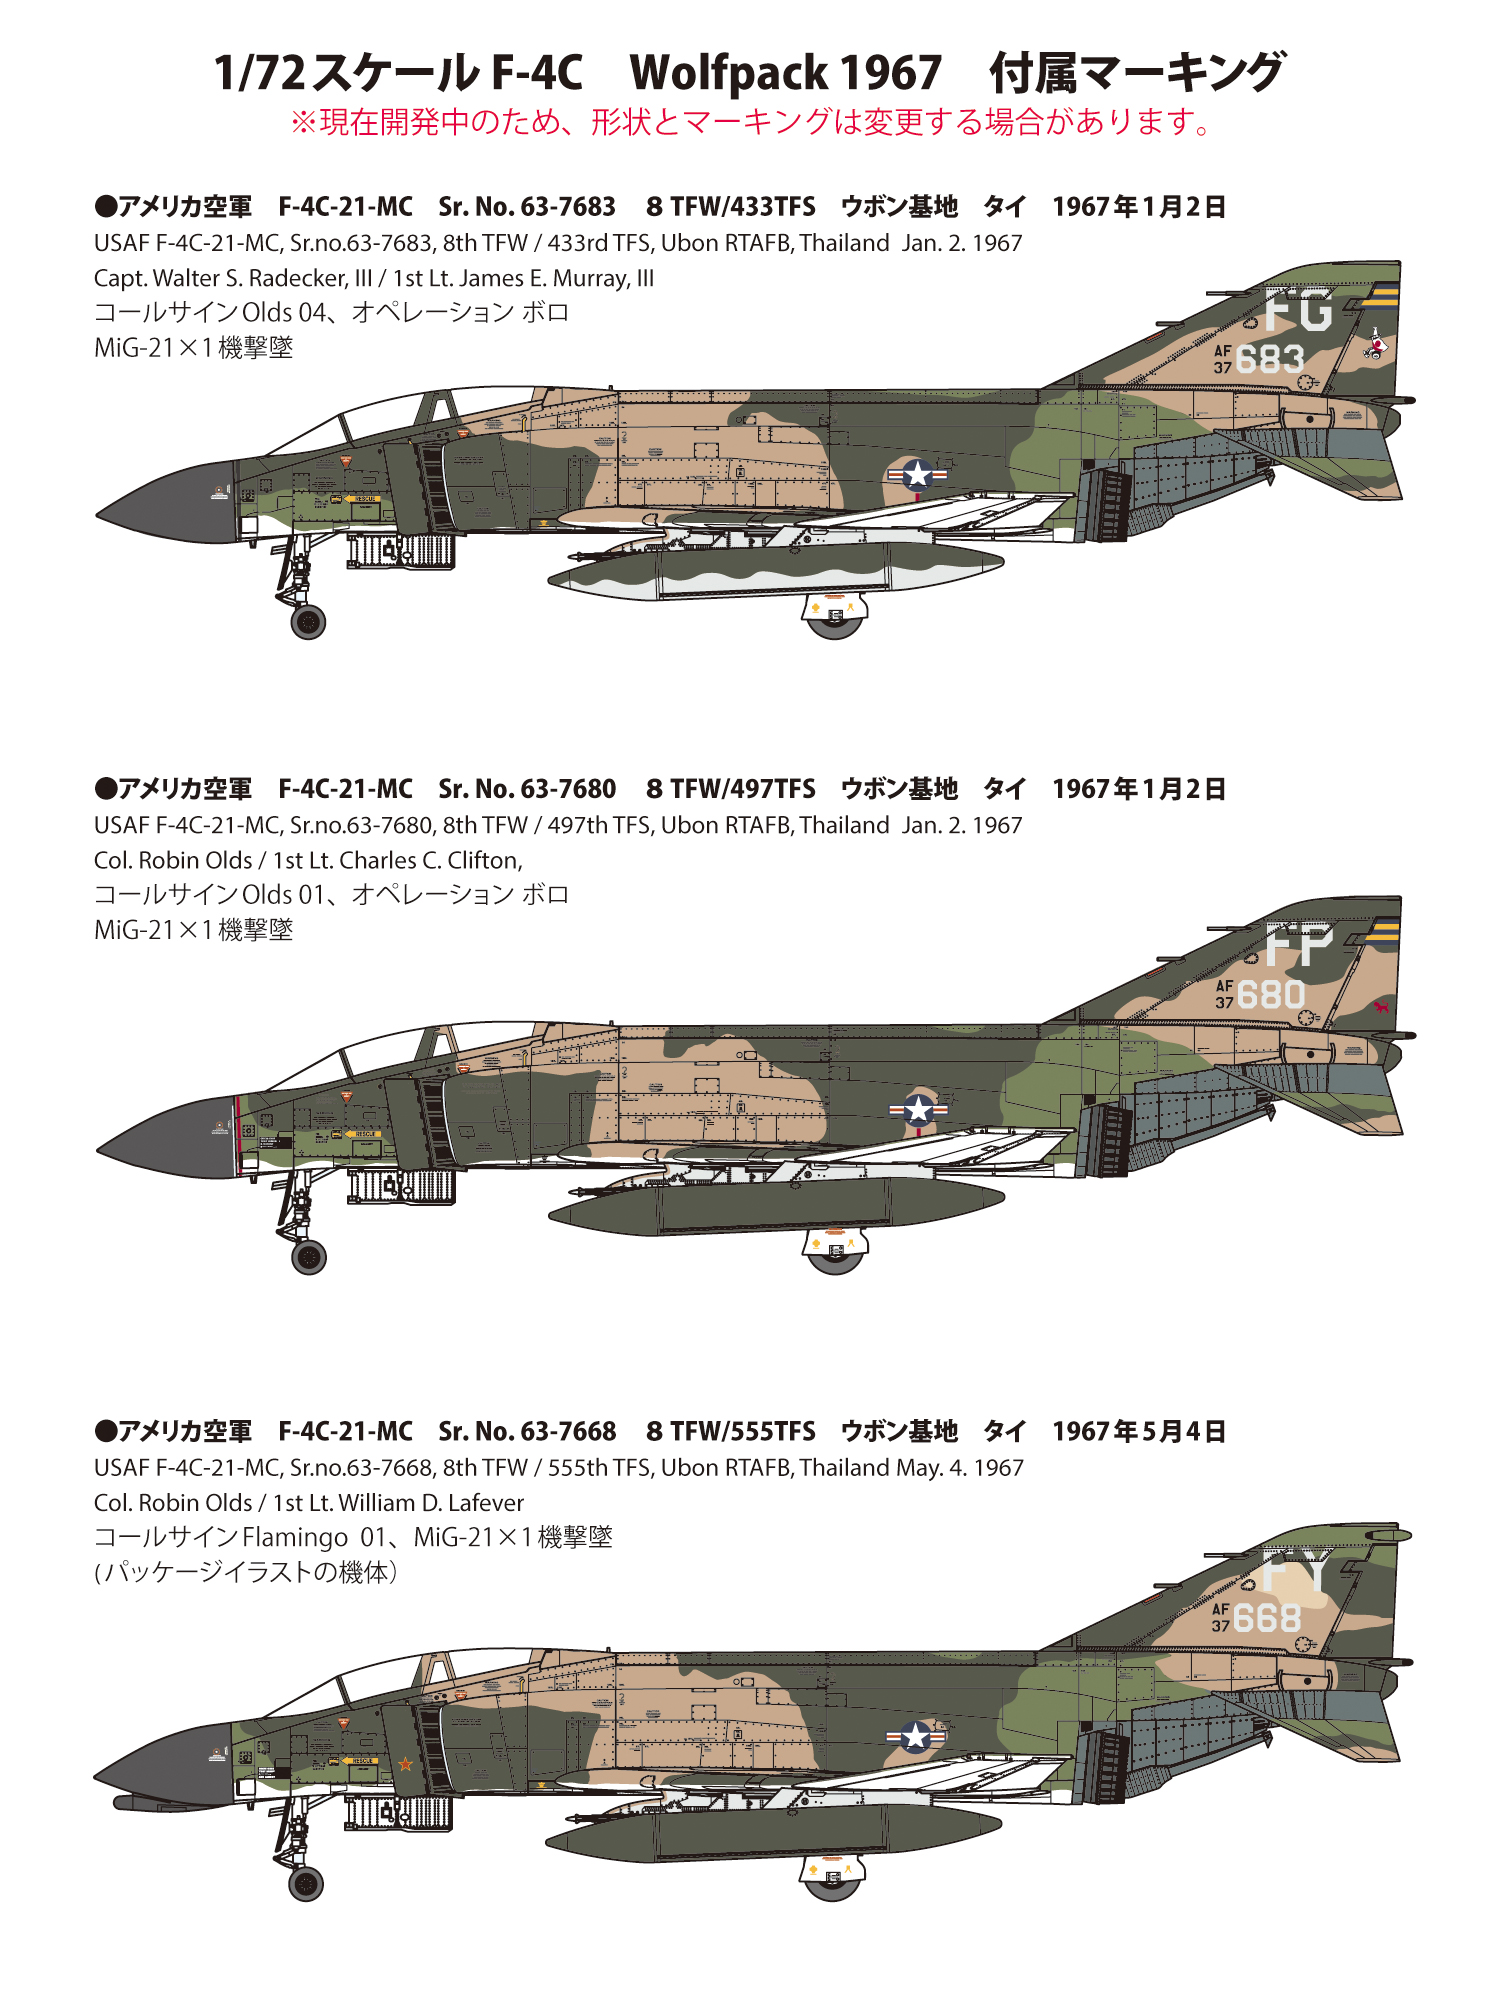 1/72 アメリカ空軍 F-4C 戦闘機 “ウルフパック 1967” 【限定品 